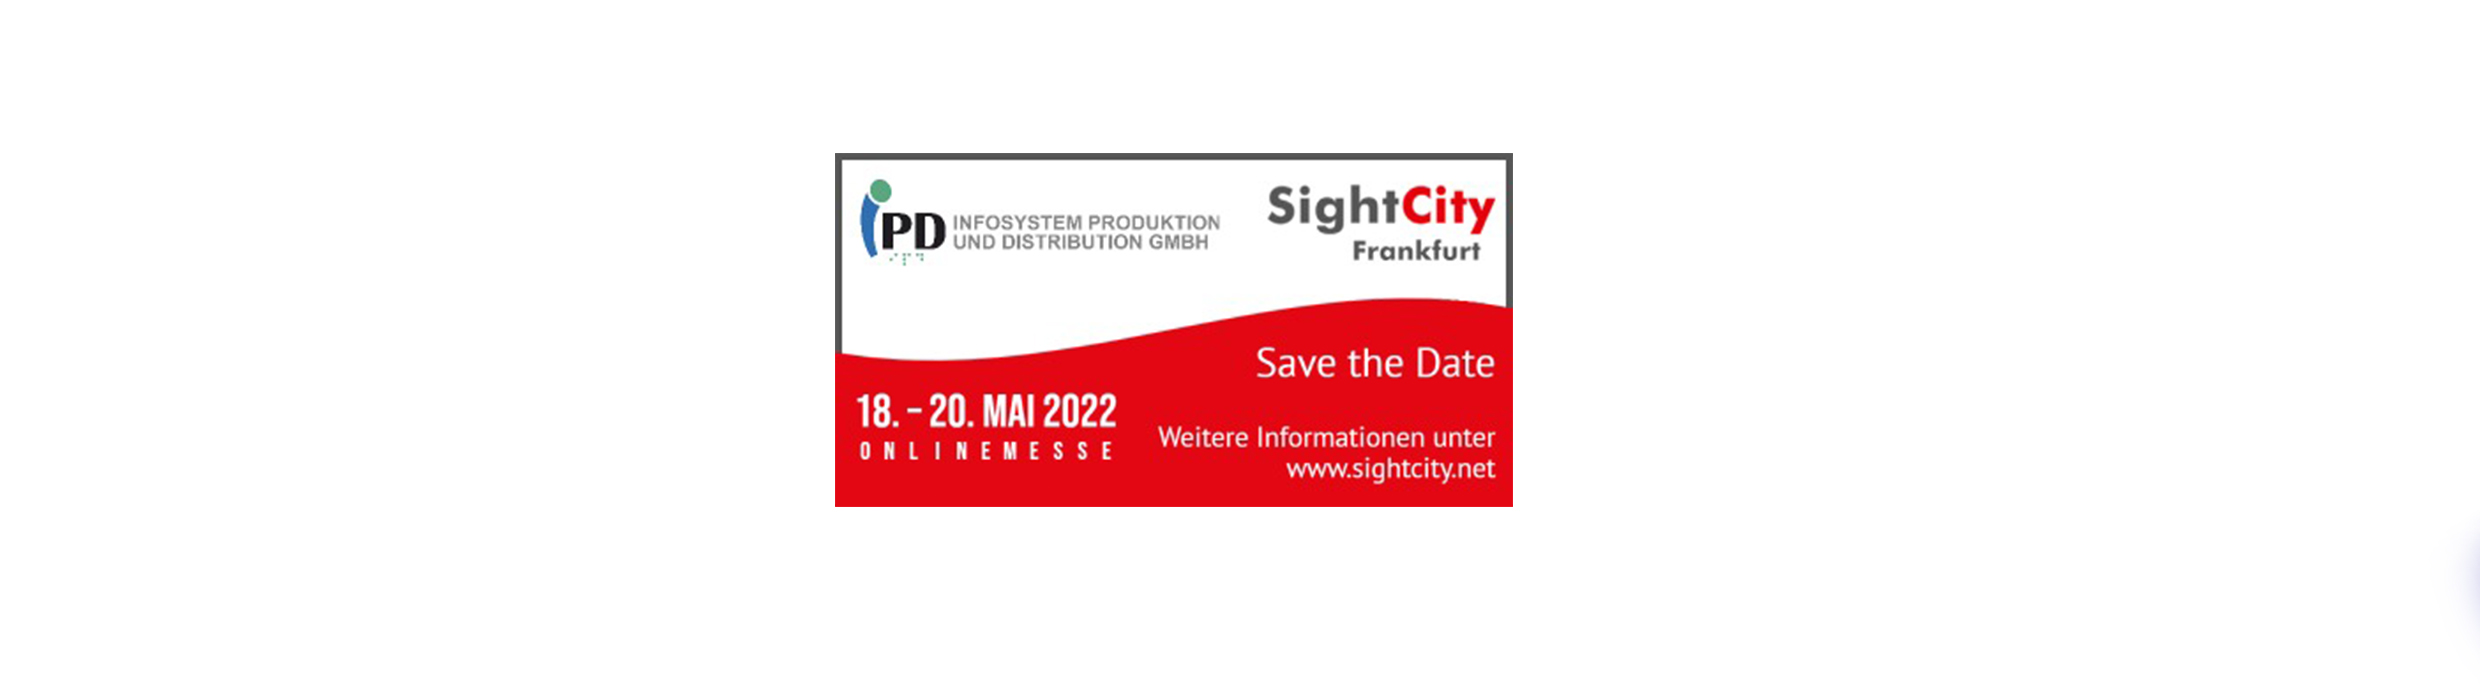 Ausstellung der digitalen SightCity 2022 vom 18-22.Mai.2022.